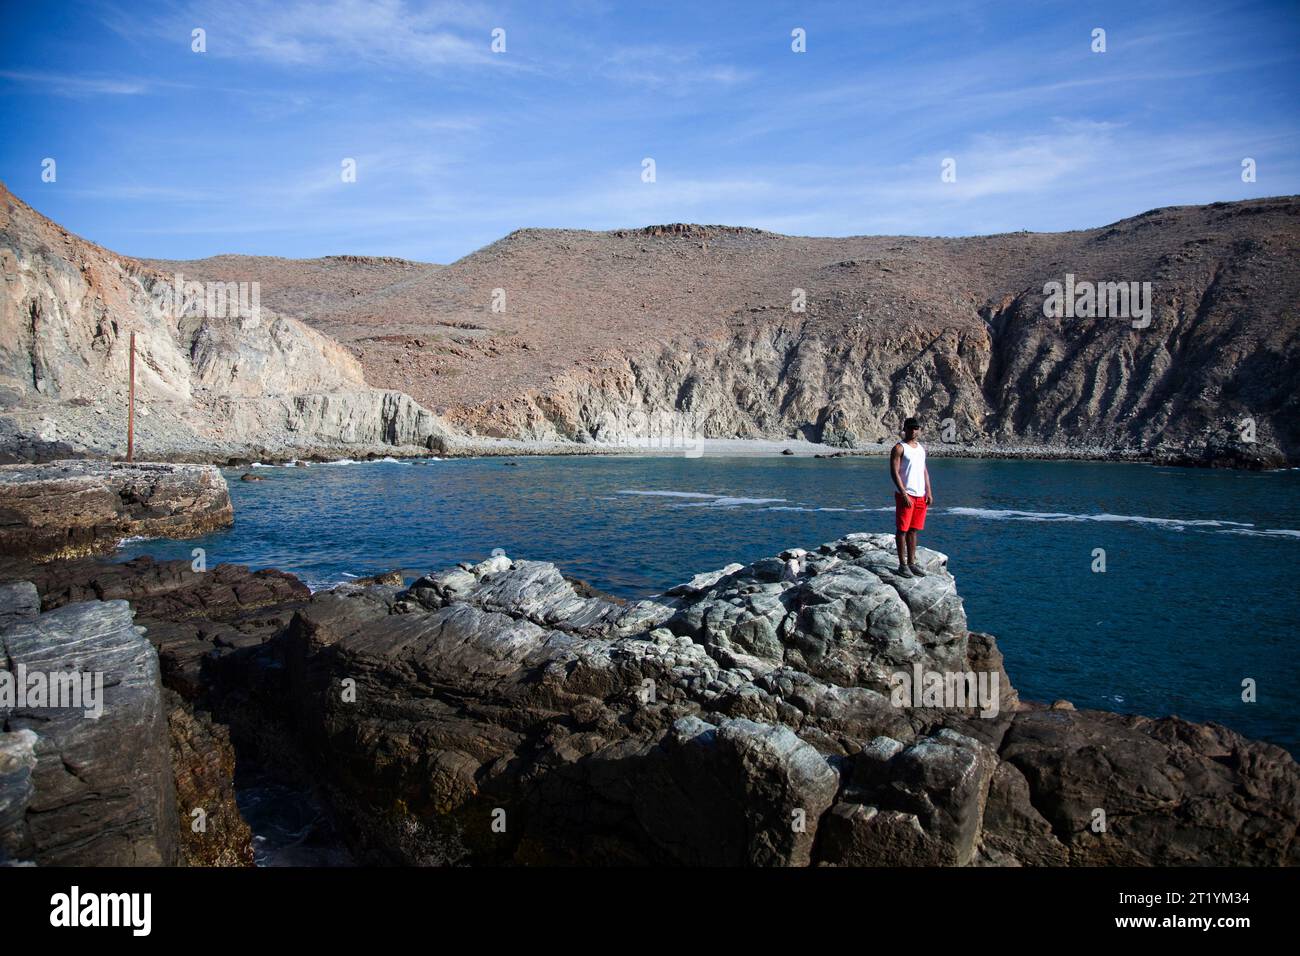 Ein junger Mann steht auf einem Felsvorsprung neben einer kleinen Bucht in der Nähe von Pescadero, Baja California Sur, Mexiko. Stockfoto